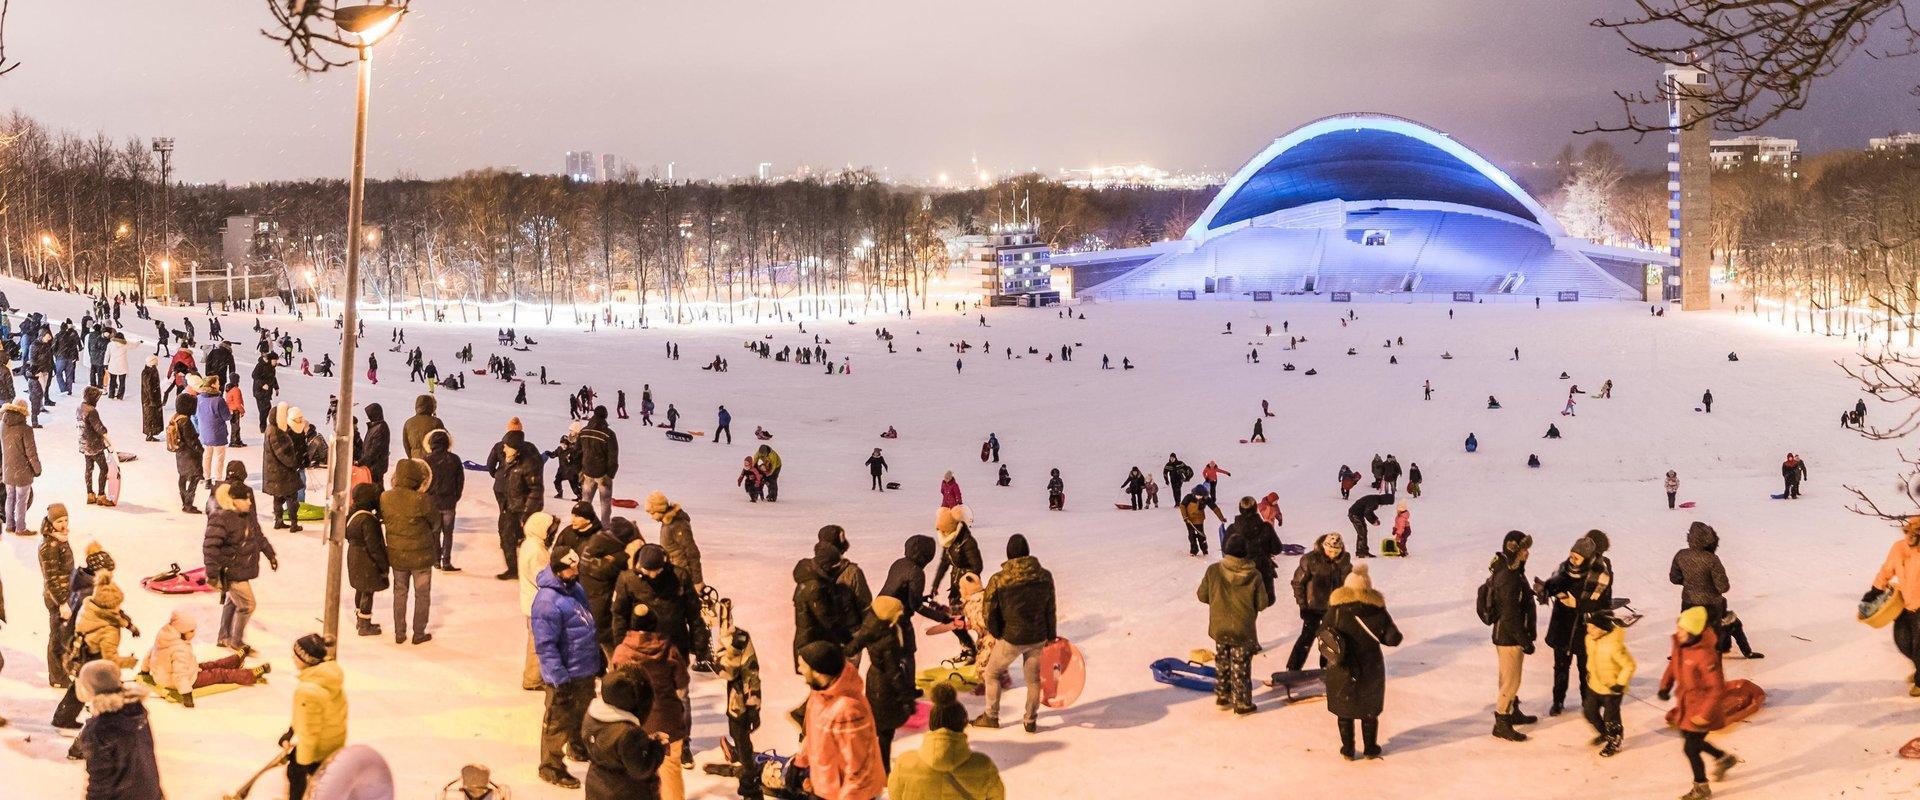 Winterzentrum am Sängerfestplatz Tallinn – Snowtubing und Schlittenhang